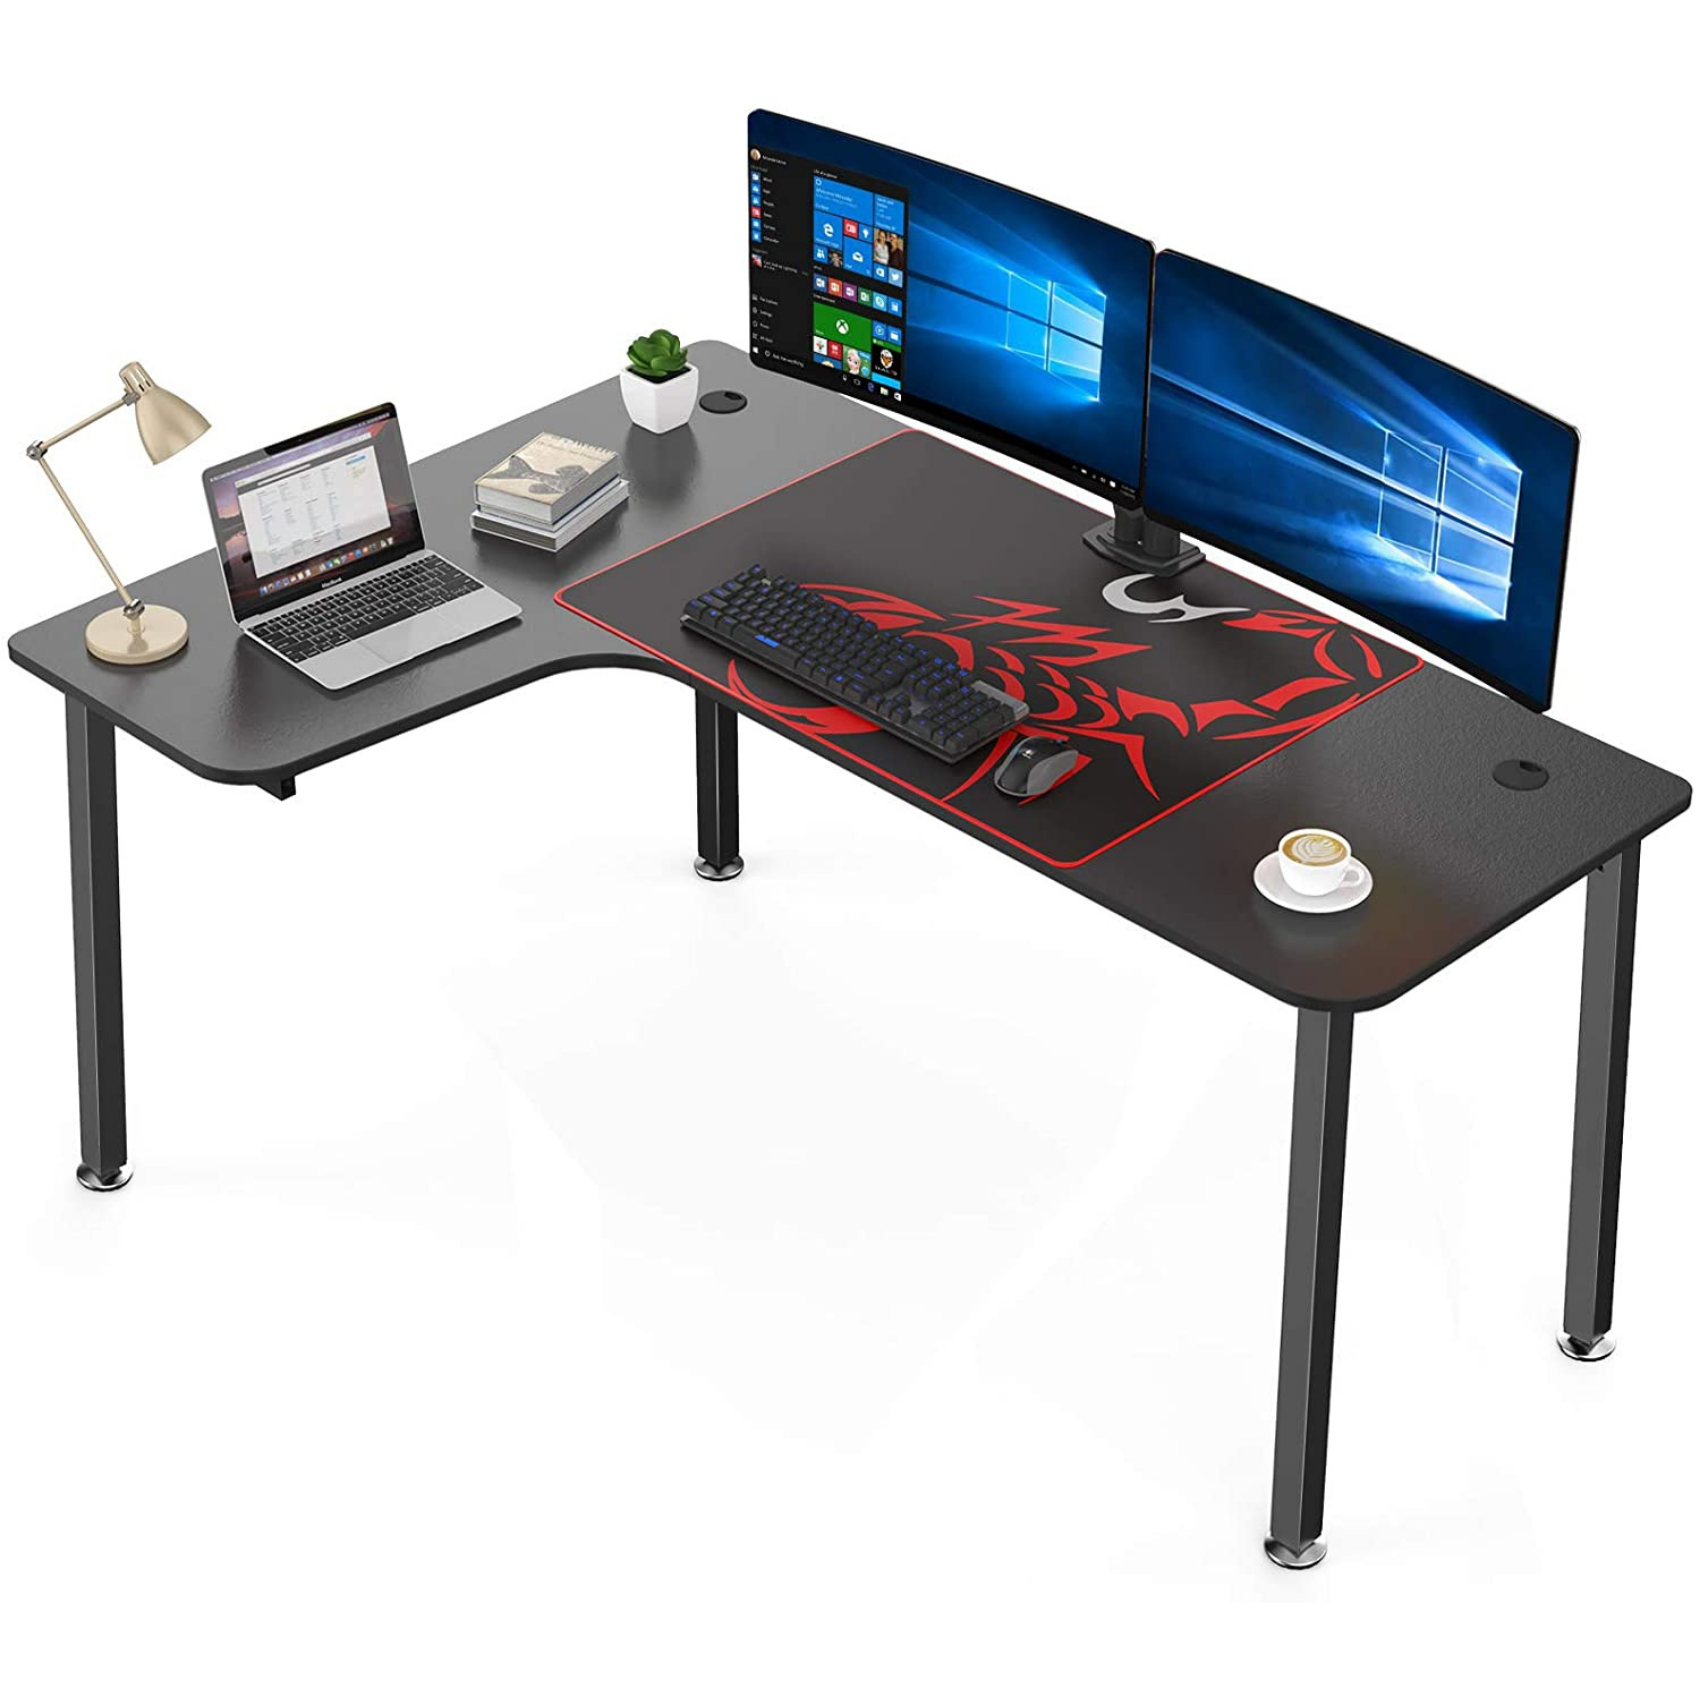 Buy Online Eureka 60 Inch Left L Shaped Gaming Desk offer 28% Discount